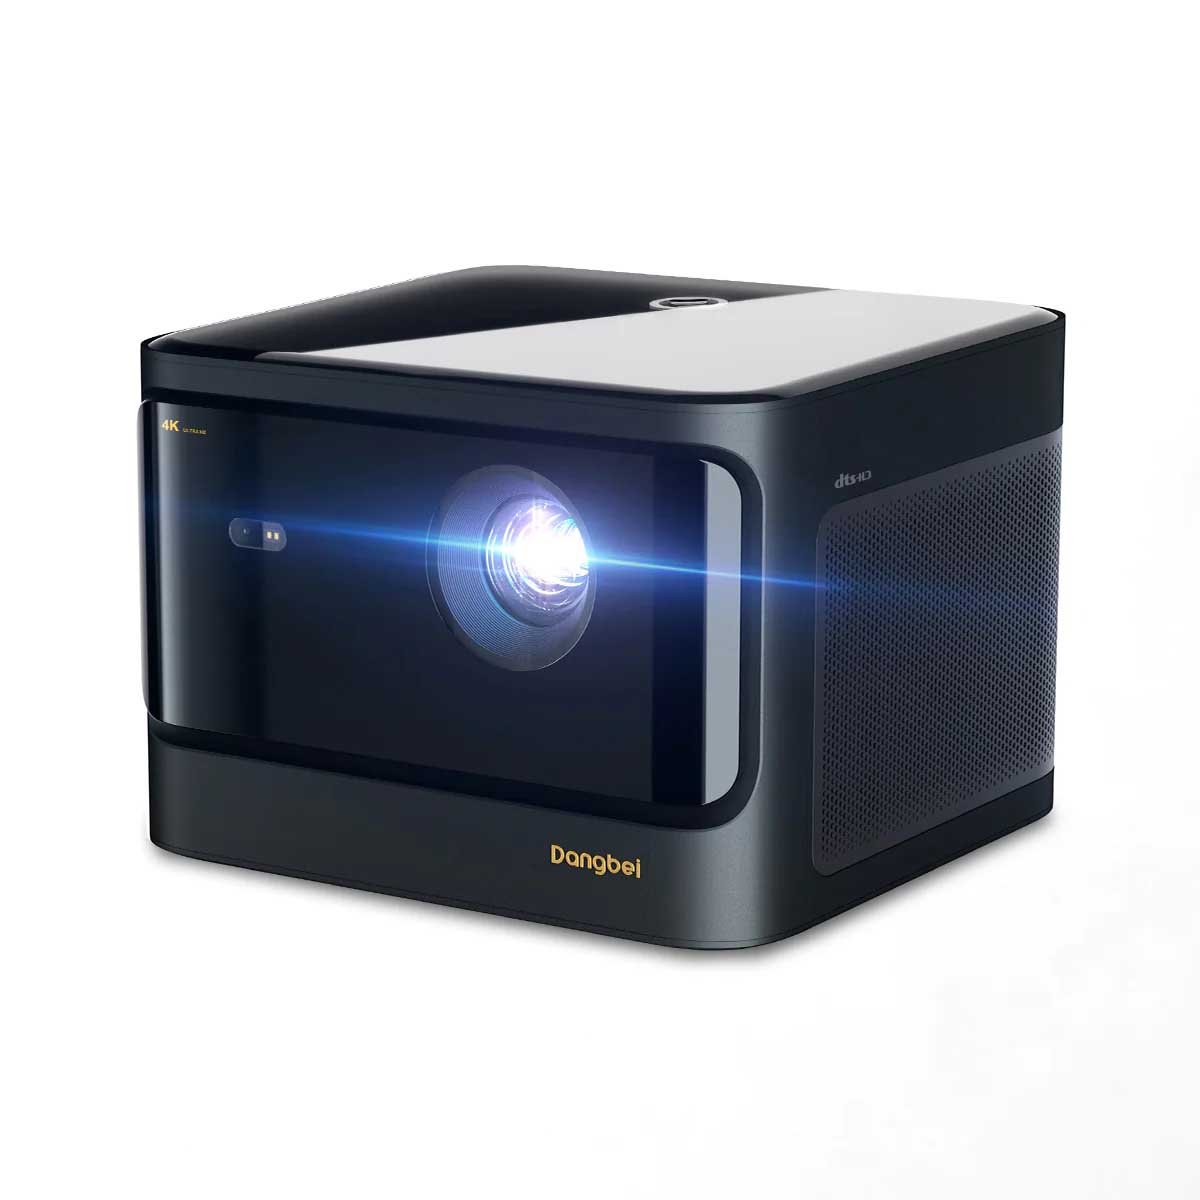 Dangbei laser projector.jpg